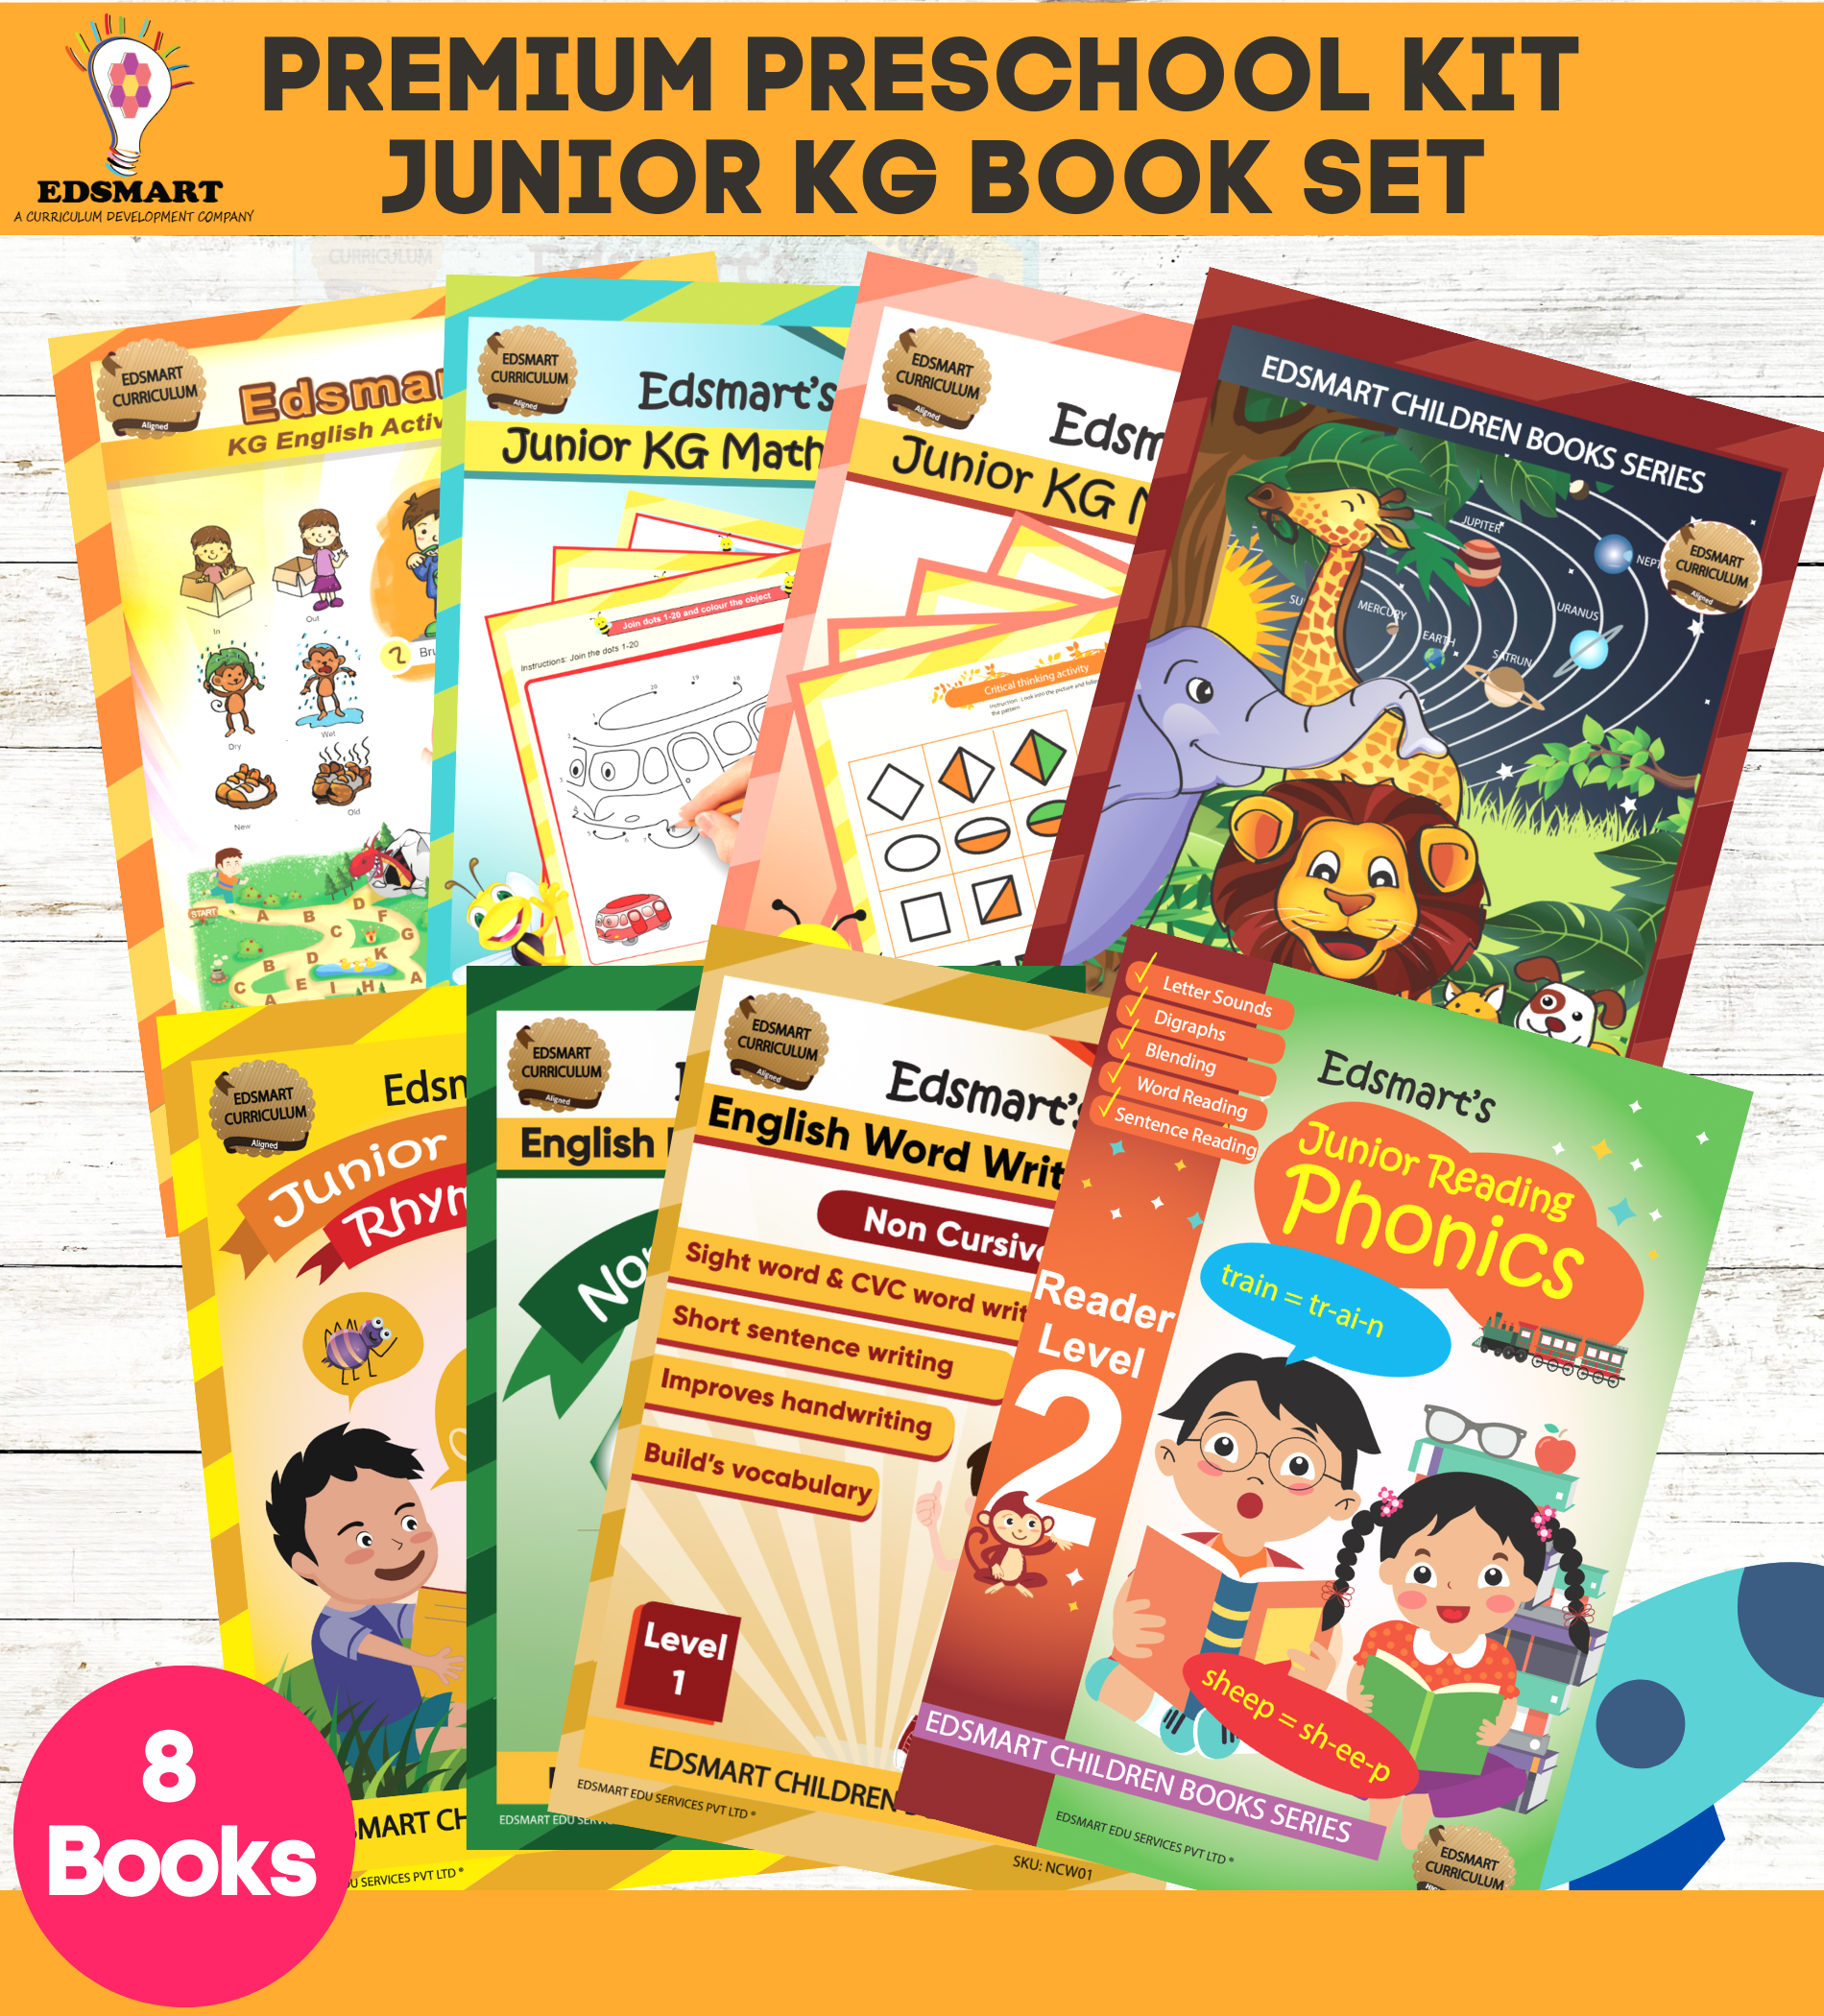 Edsmart Junior KG /LKG Preschool Books and Kit 